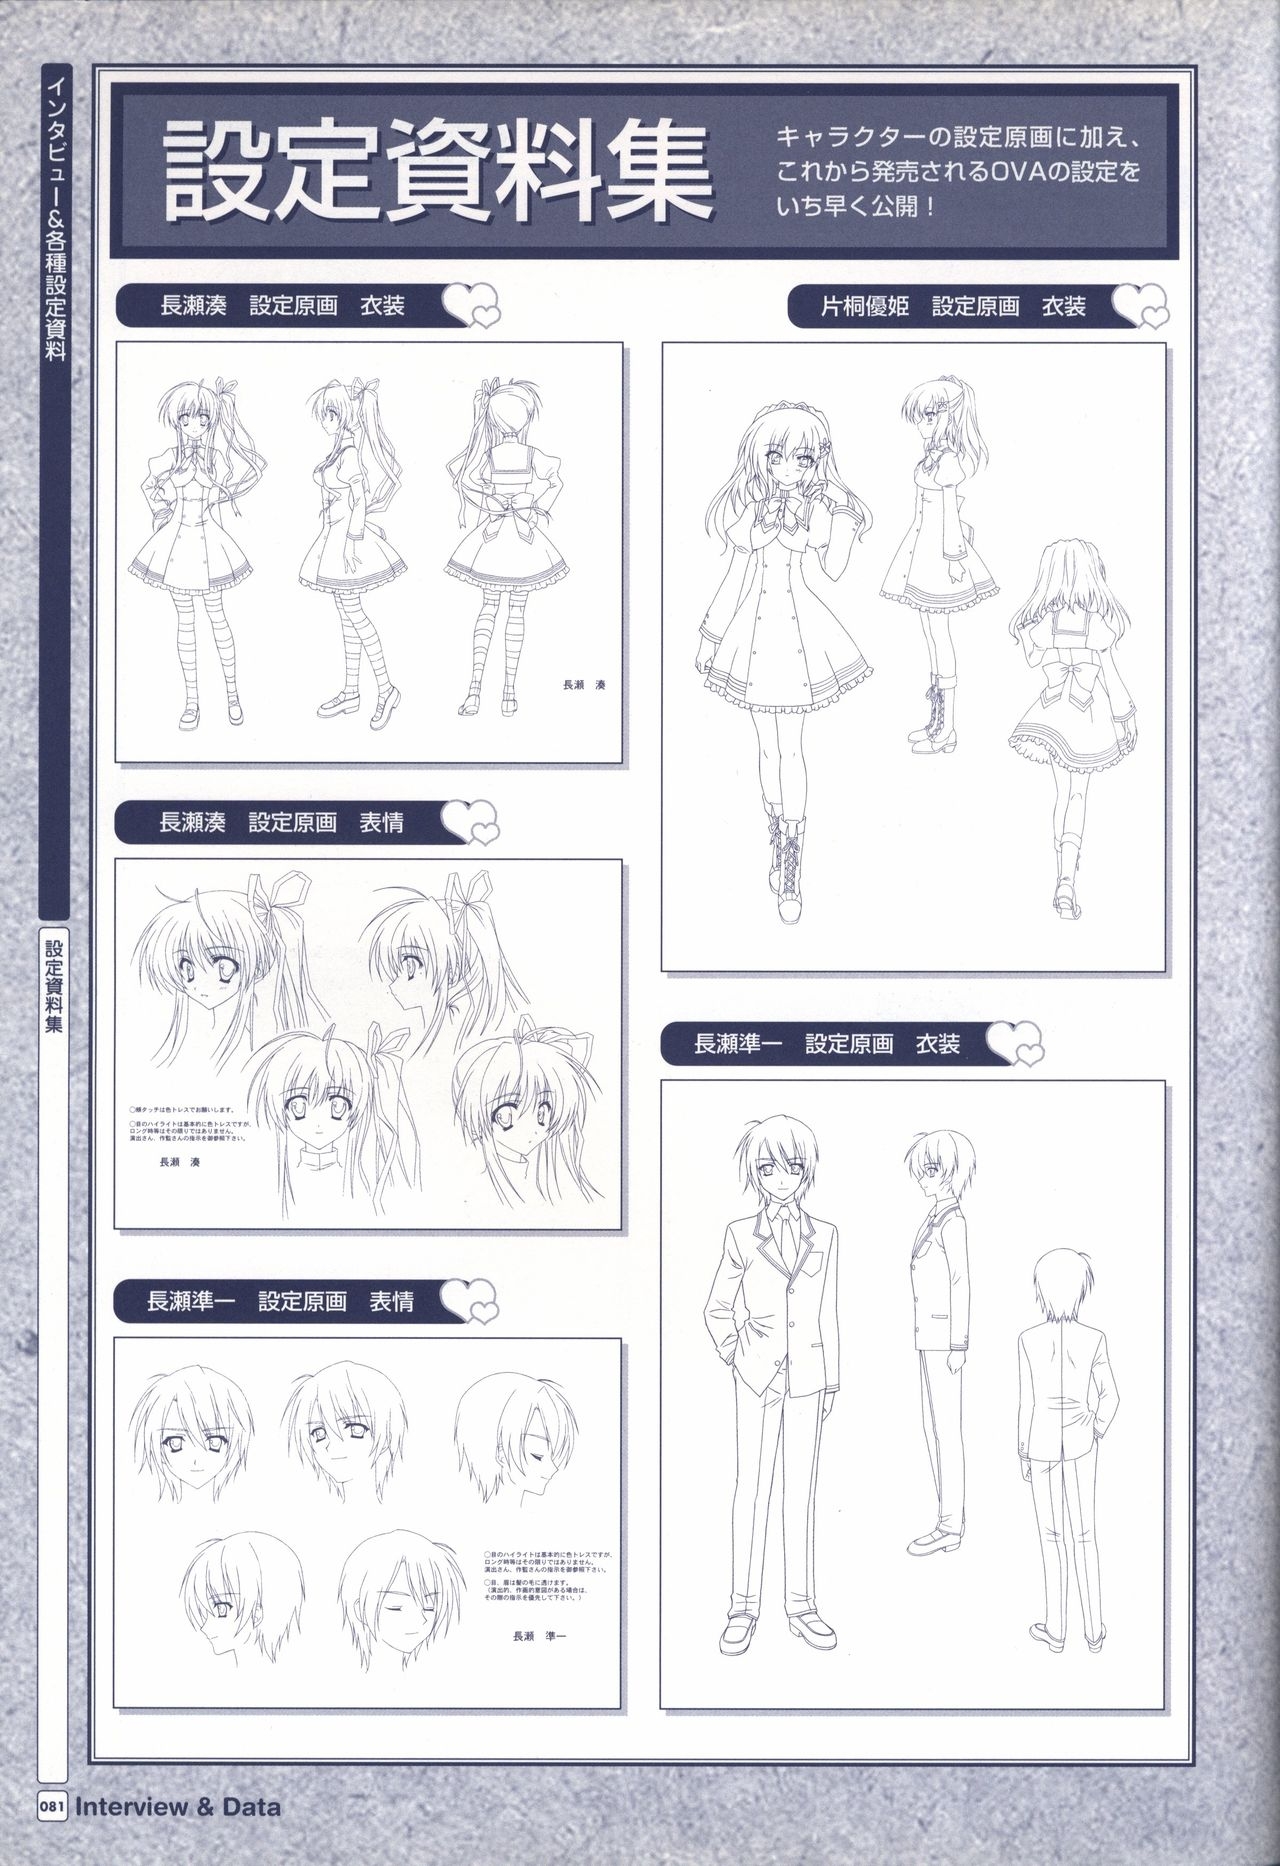 TV ANIME Akaneiro ni Somaru Saka Visual Guide Book 81